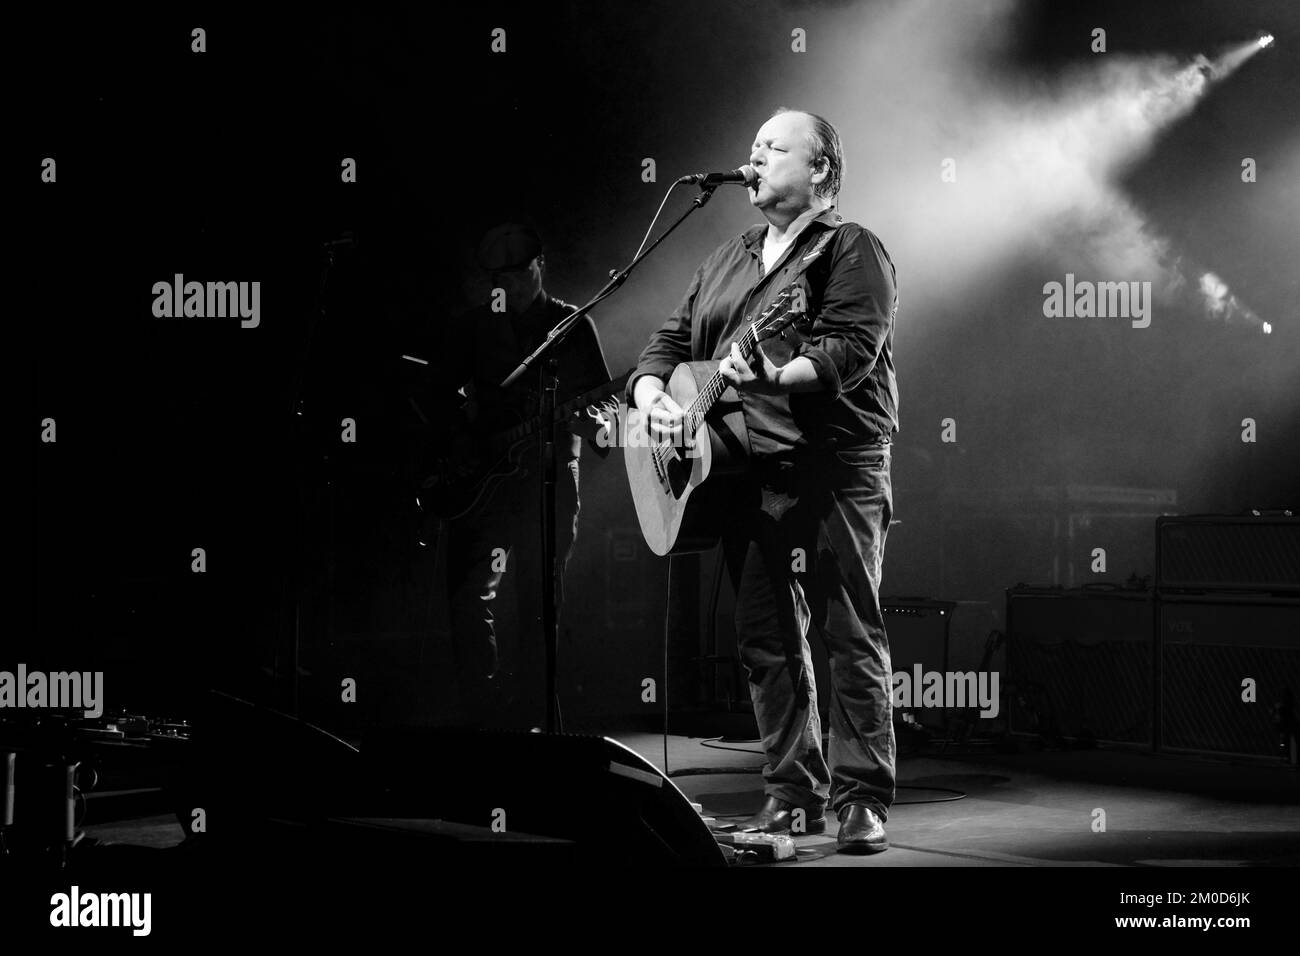 I Pixies live in concerto a Stoccolma - Joey Santiago (chitarra) e Frank Black (alias Black Francis), cantante e chitarrista dei Pixies, dal vivo sul palco durante un concerto del loro tour "Beneath the Eyrie" al Cirkus di Stoccolma, Svezia il 2019 settembre (versione B&W) Foto Stock